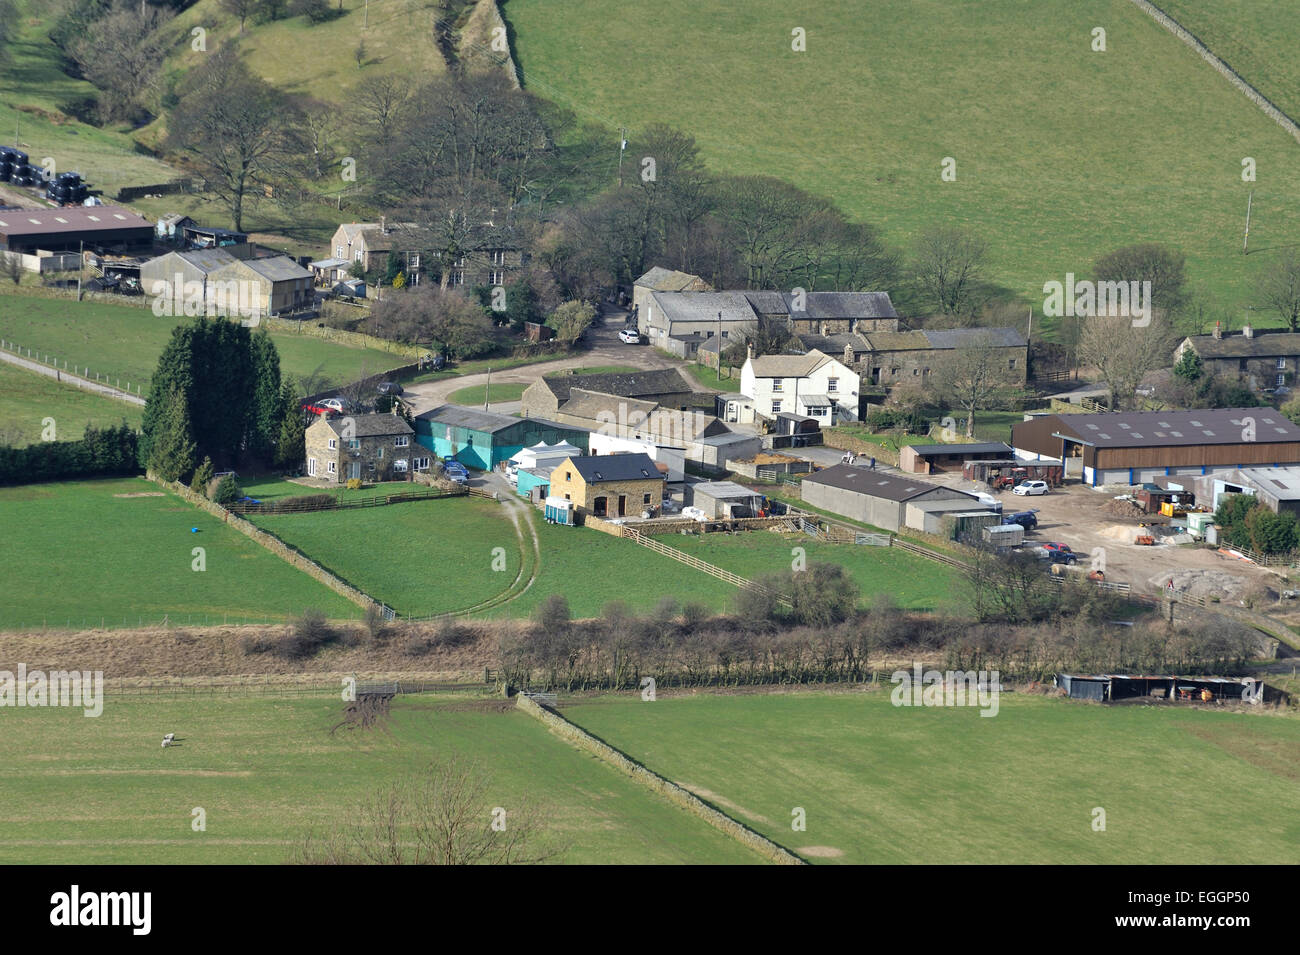 Vista aerea di un villaggio, vale di Edale, Peak District, Derbyshire, Regno Unito Foto Stock